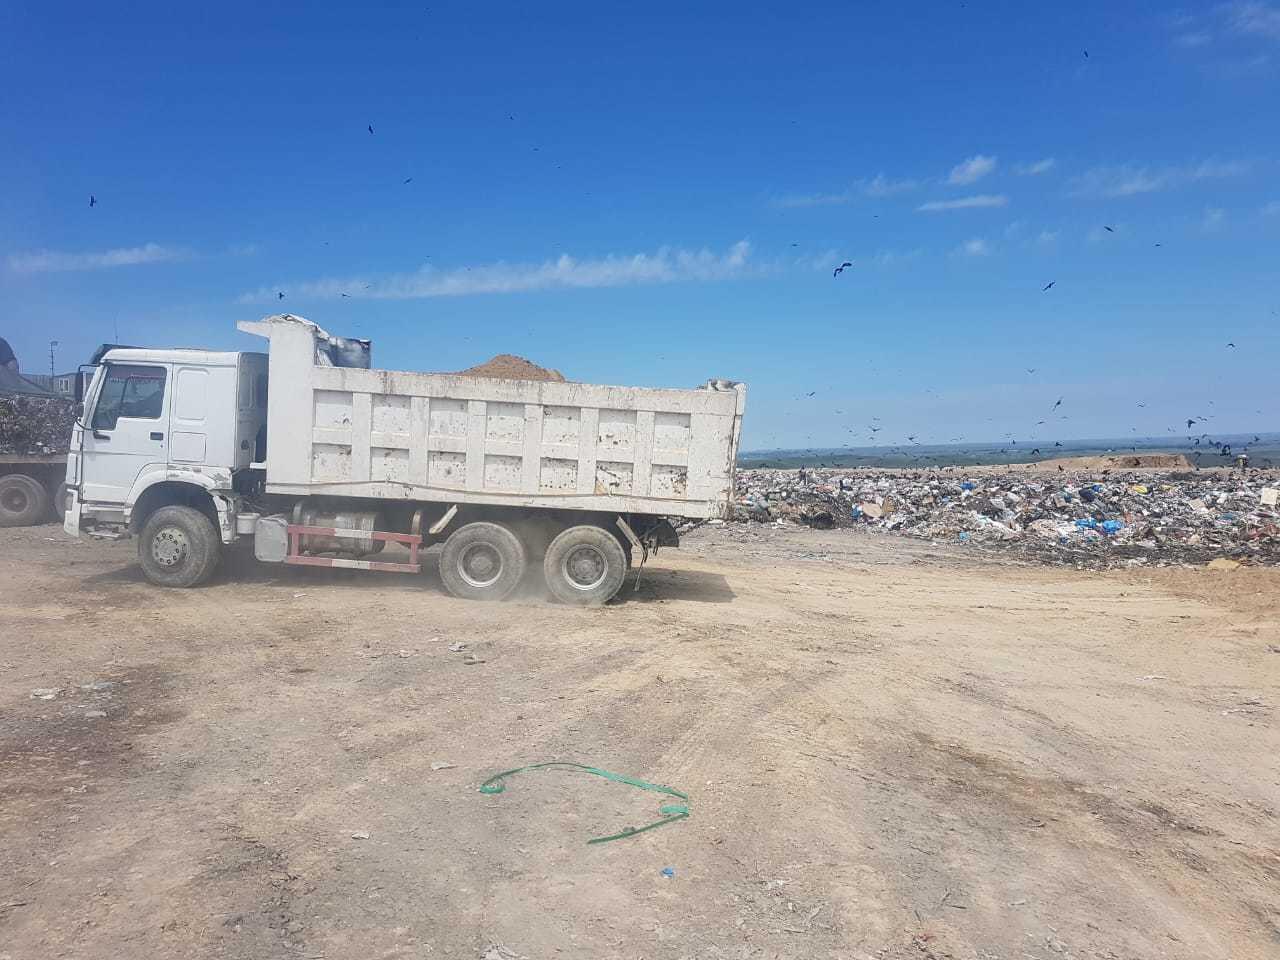 Пожар на мусорном полигоне в Алматинской области 